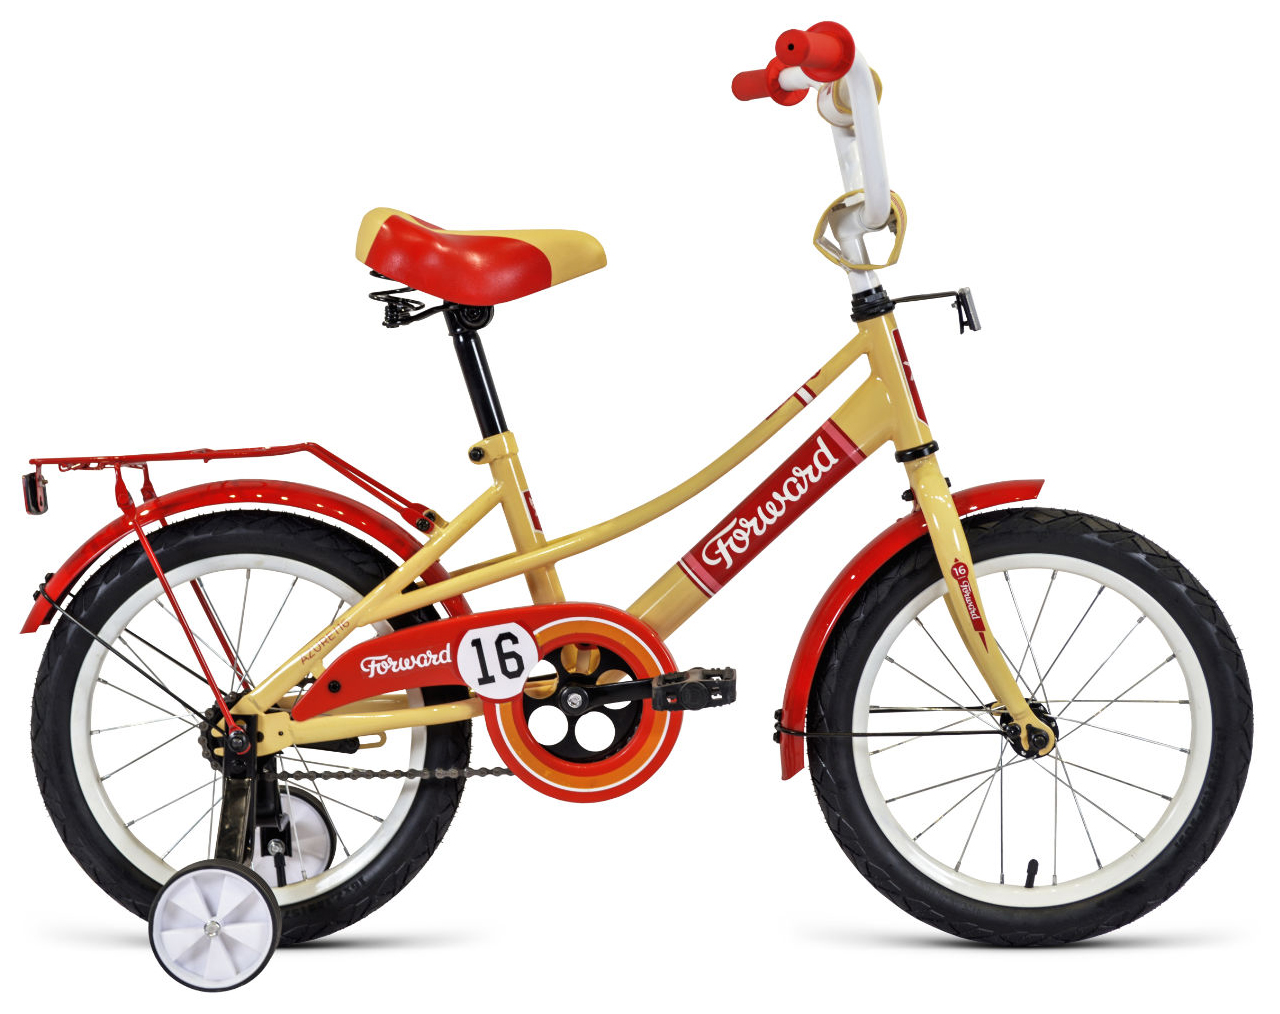  Отзывы о Детском велосипеде Forward Forward Azure 16 (2021) 2021